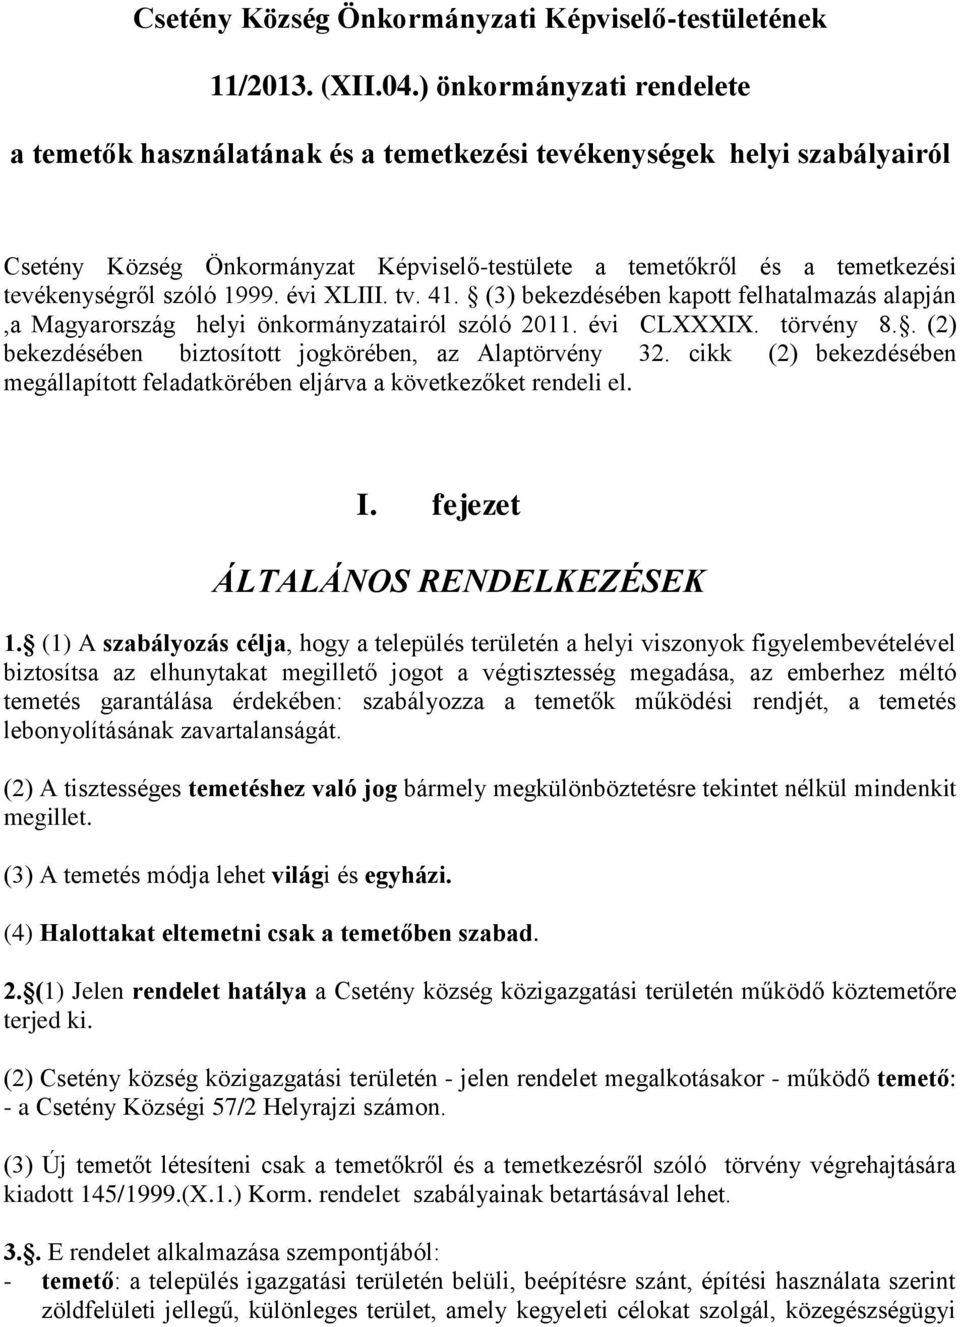 1999. évi XLIII. tv. 41. (3) bekezdésében kapott felhatalmazás alapján,a Magyarország helyi önkormányzatairól szóló 2011. évi CLXXXIX. törvény 8.